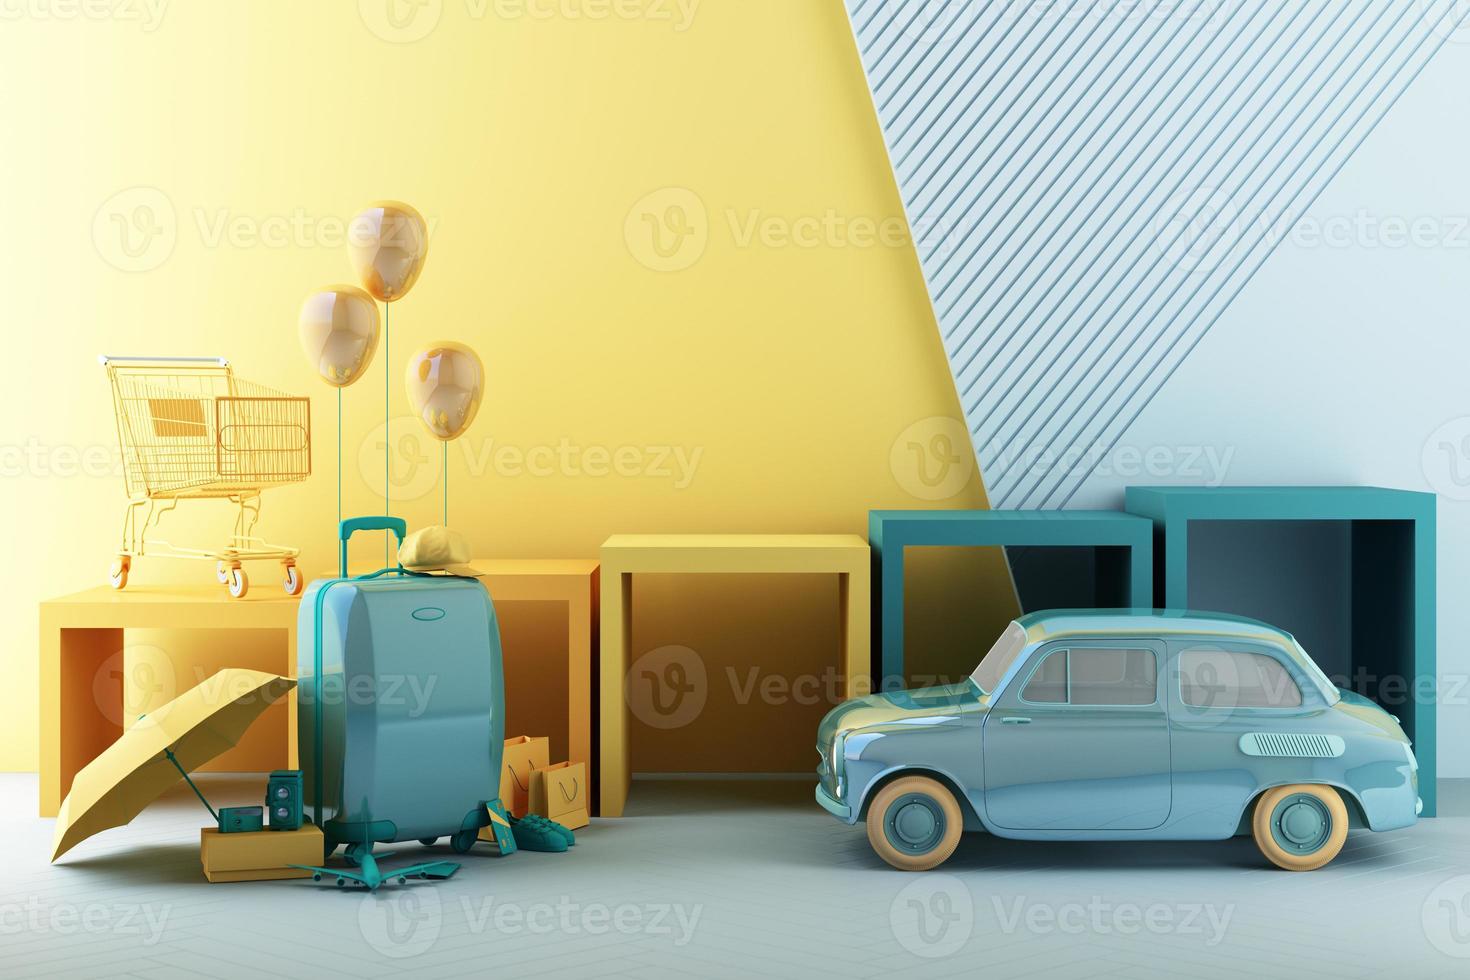 conceito de compras de verão com bagagem cercada por guarda-chuvas, sapatos e câmeras, juntamente com modelos de avião e roupas em formas geométricas modernas de cabide com renderização em 3d de suporte de produto foto